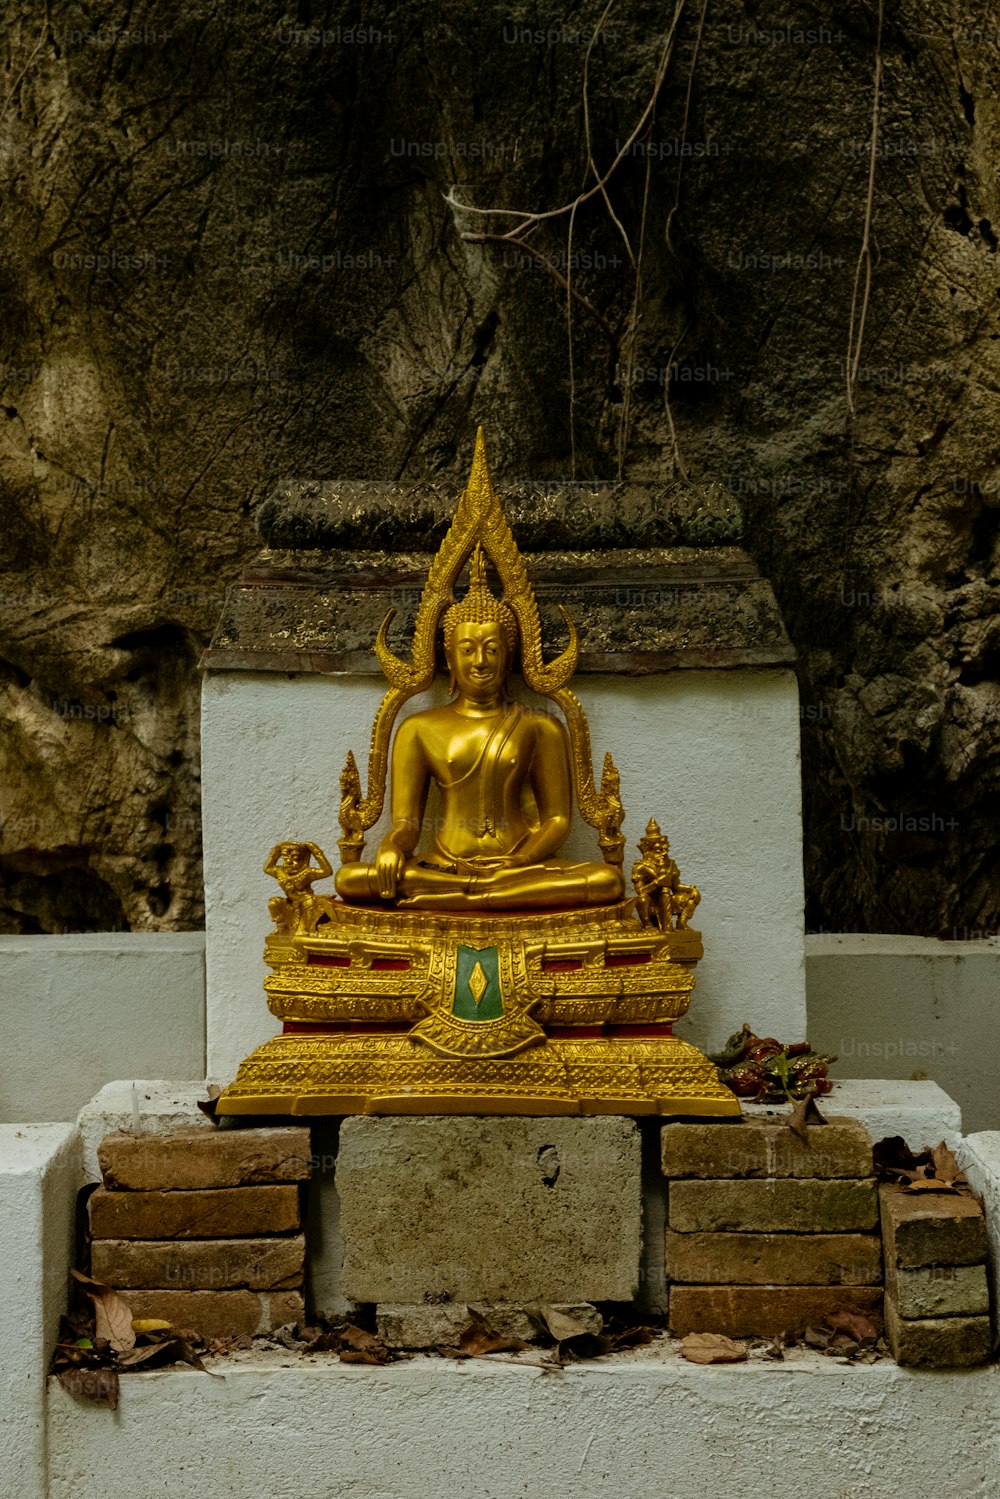 벽돌 �더미 위에 앉아 있는 황금 조각상